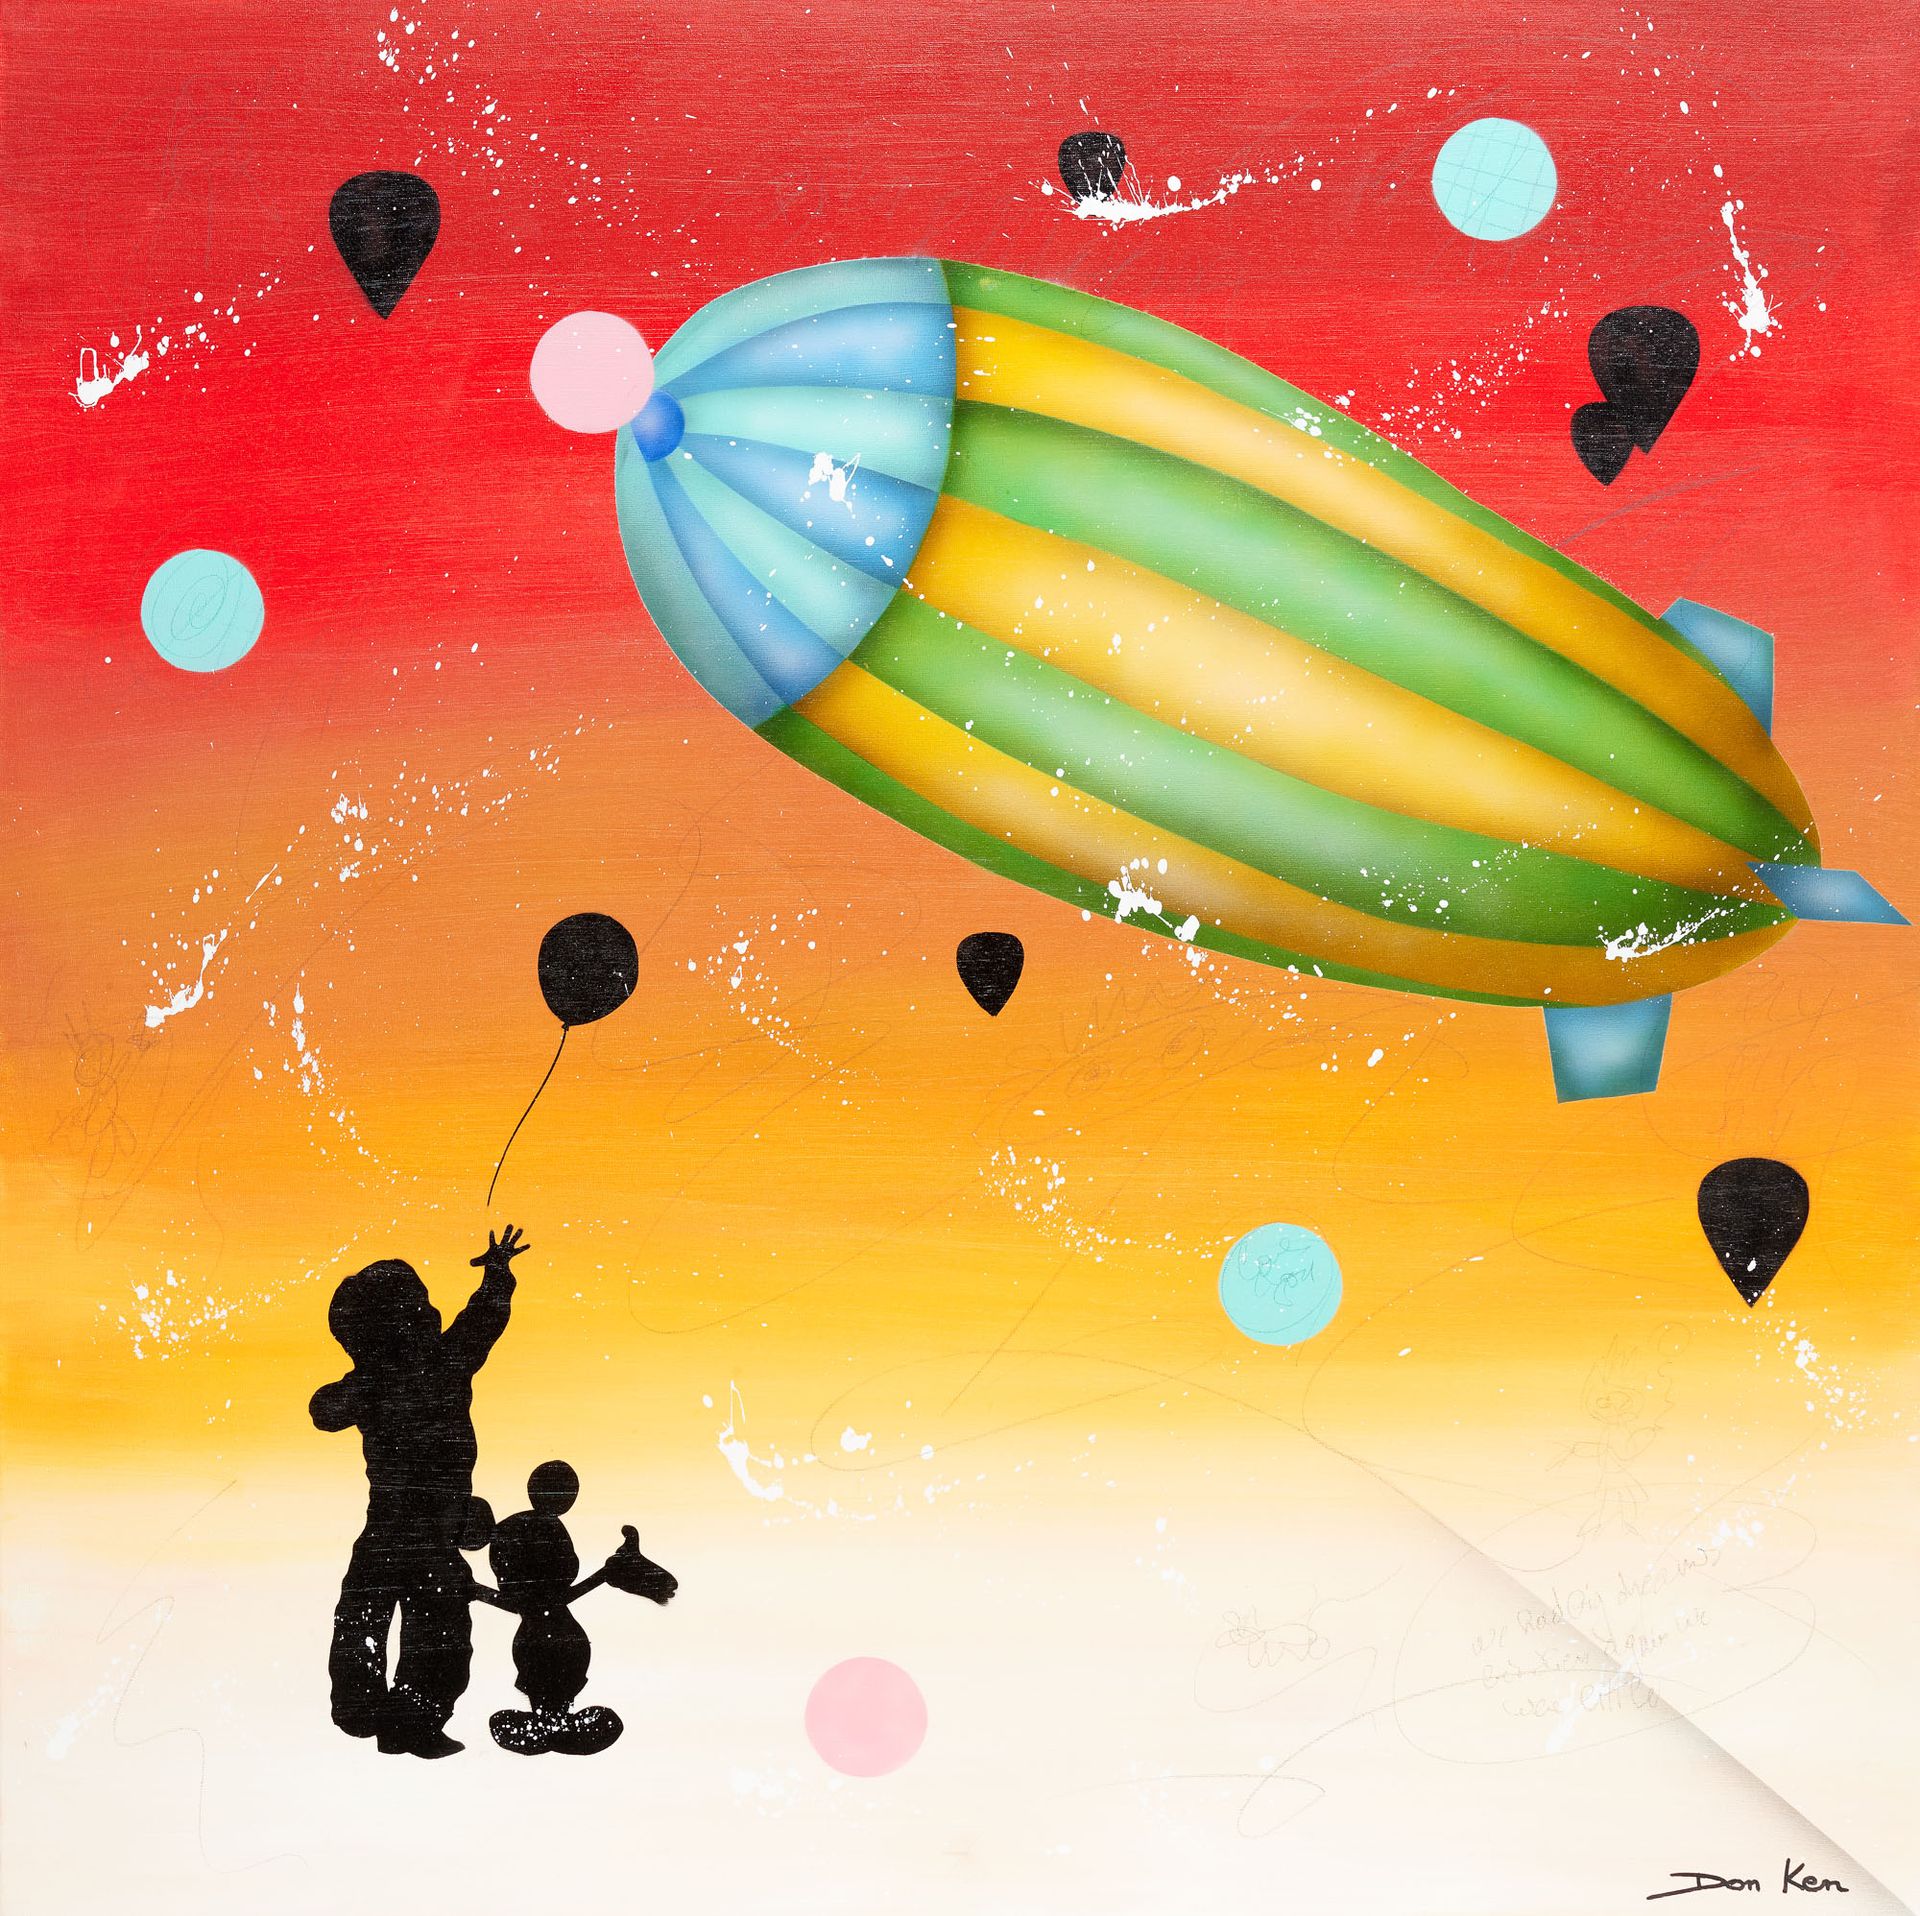 Don KEN École belge (1956) Acrylique sur toile: "Big baloon".

Titrée et signée:&hellip;